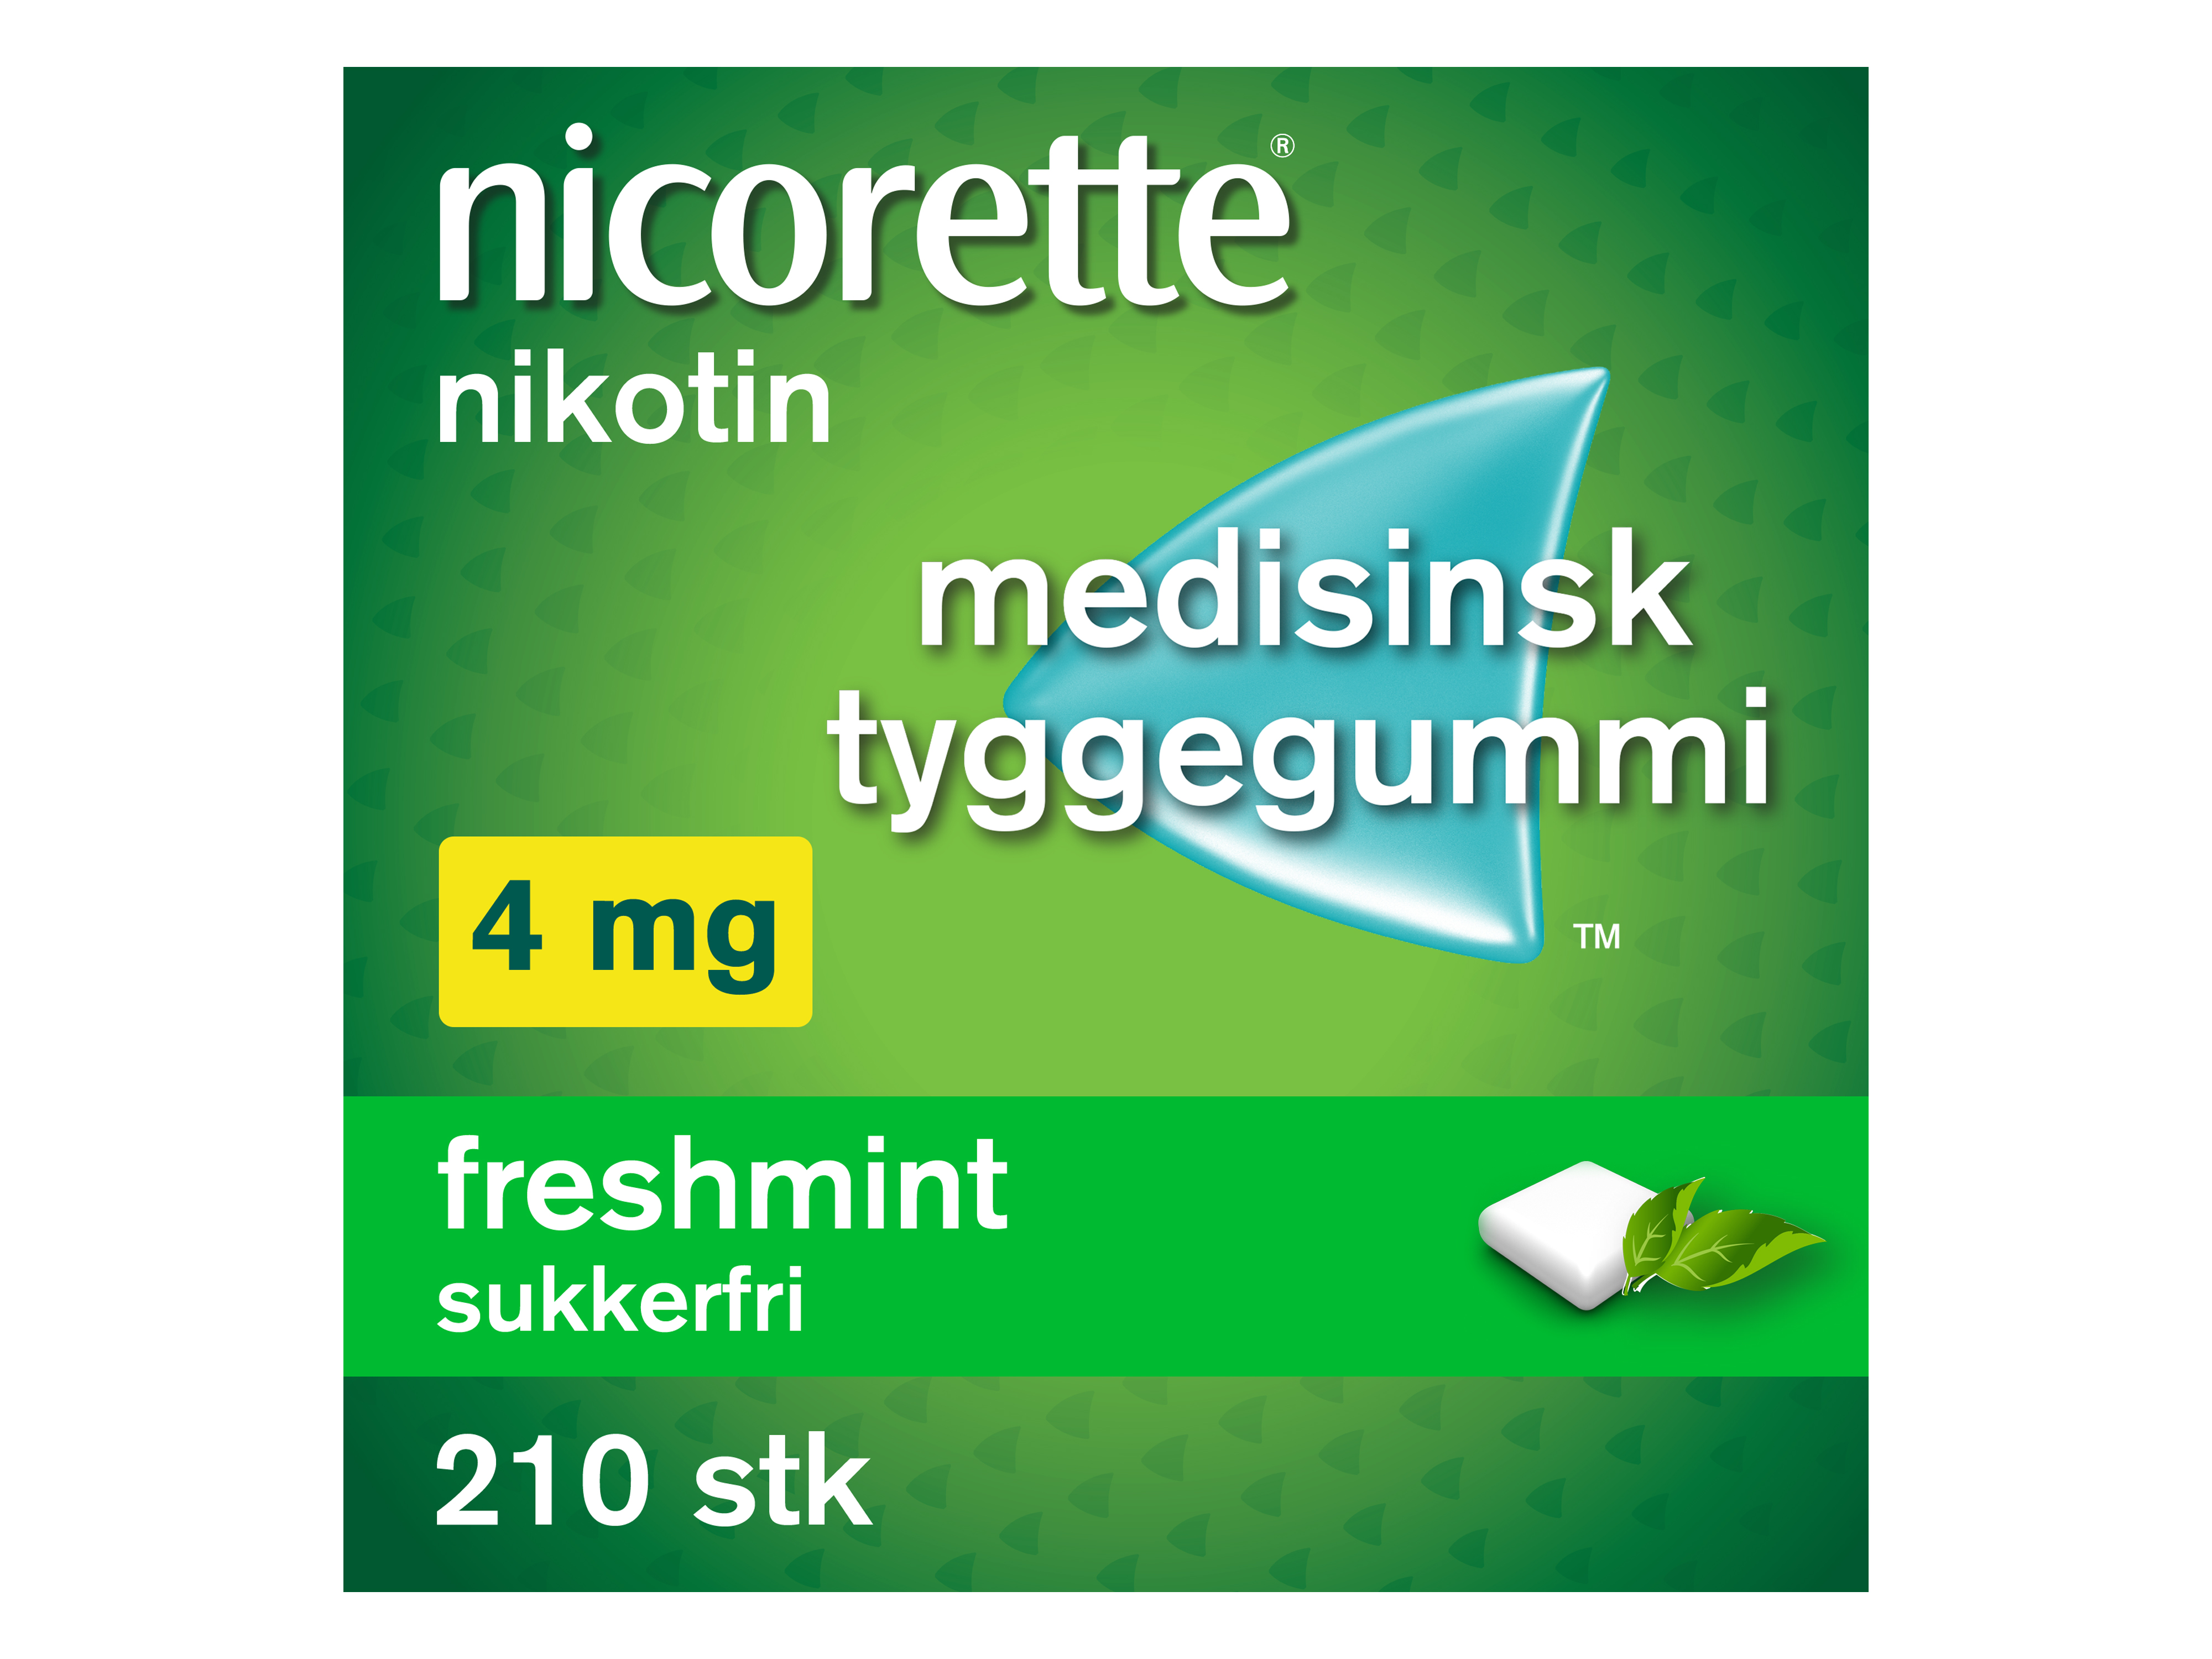 Nicorette Tyggegummi, 4 mg nikotin, Freshmint 210 stk., Slutte å røyke